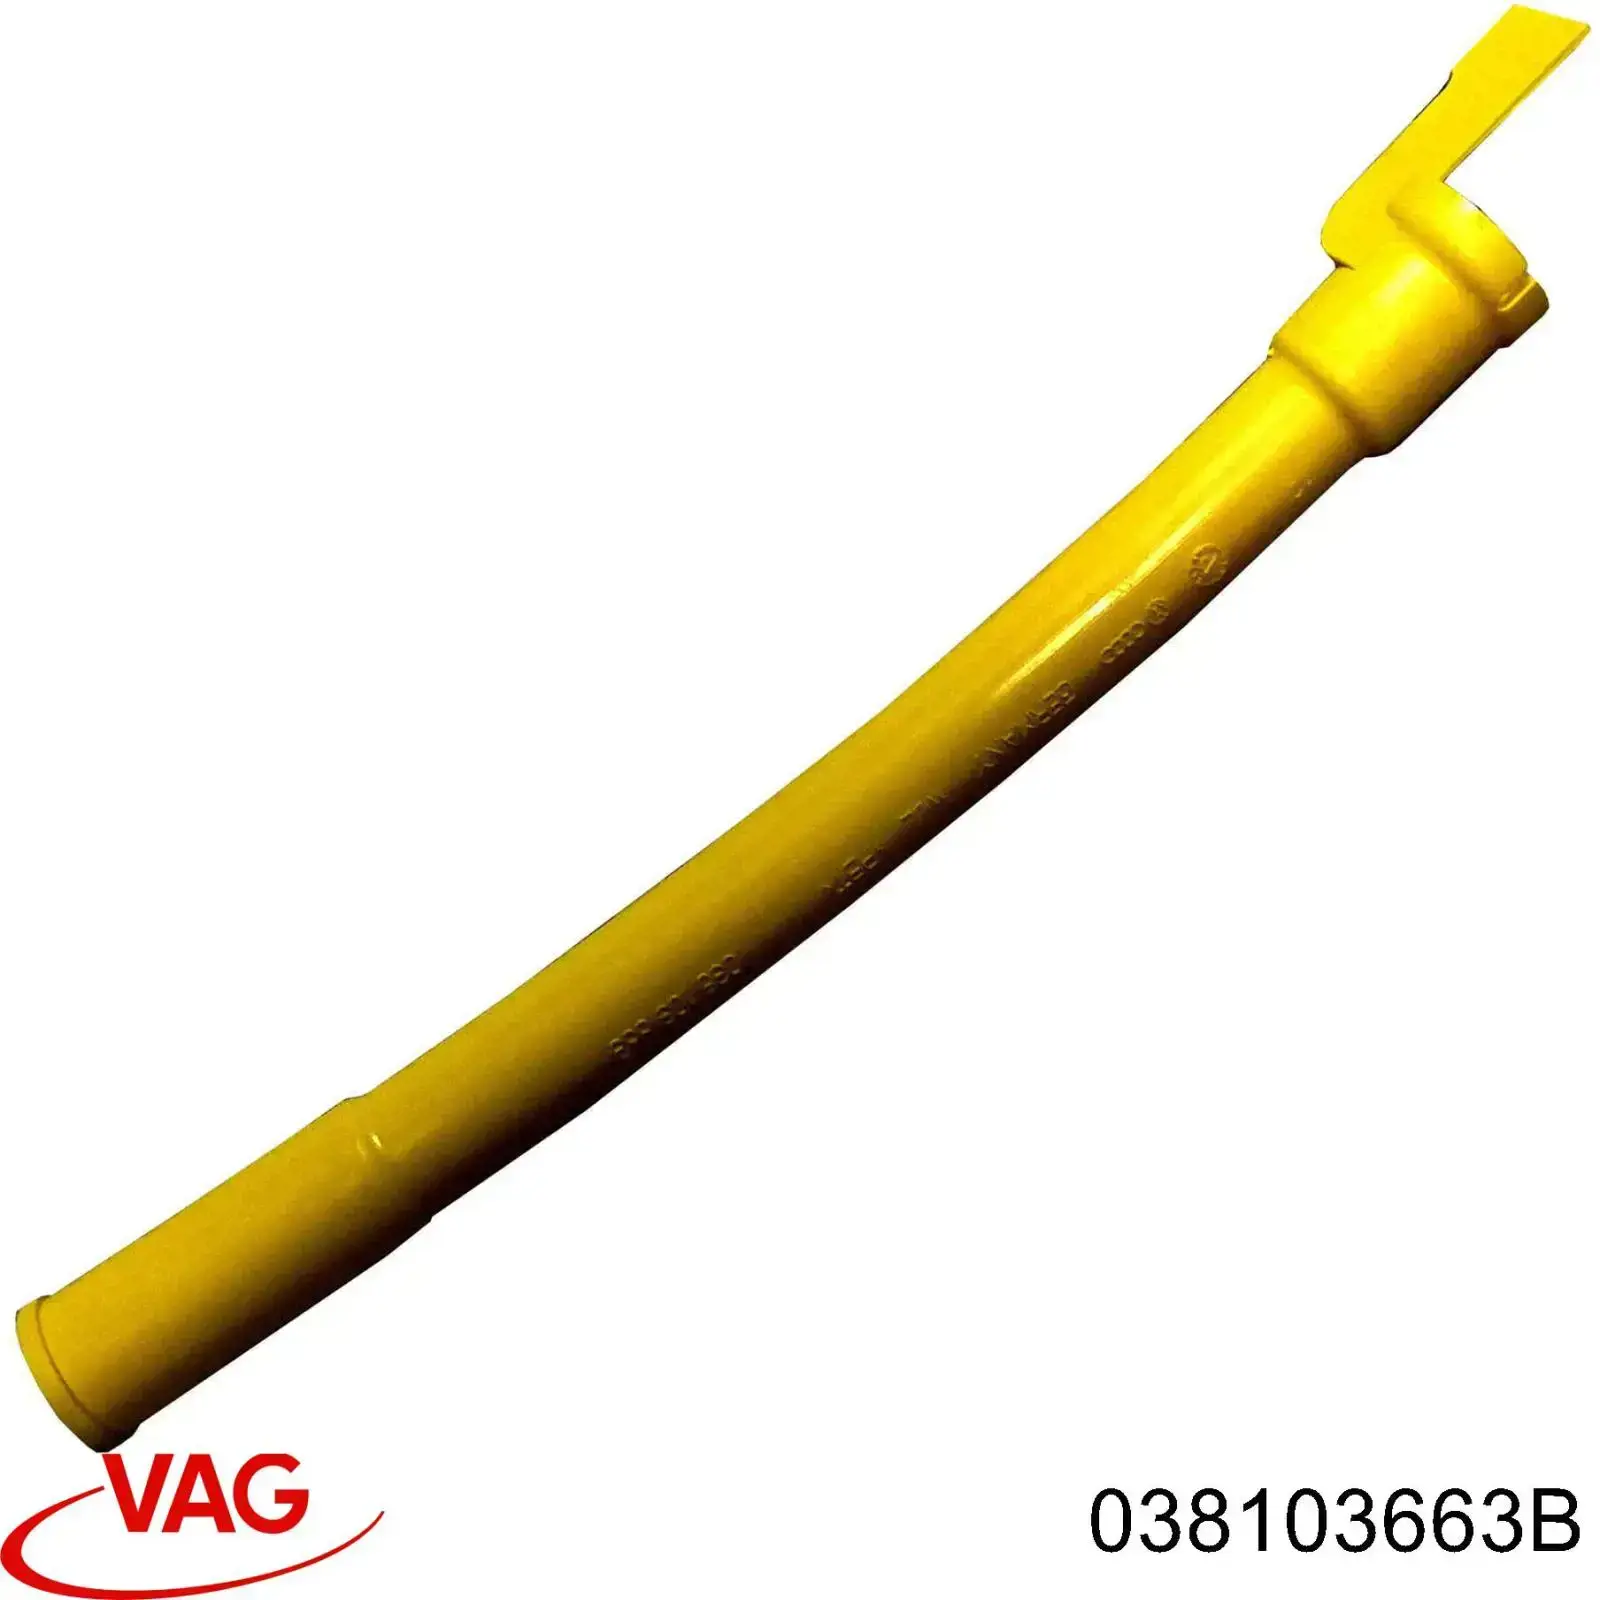 038103663B VAG направляюча щупа-індикатора рівня масла в двигуні